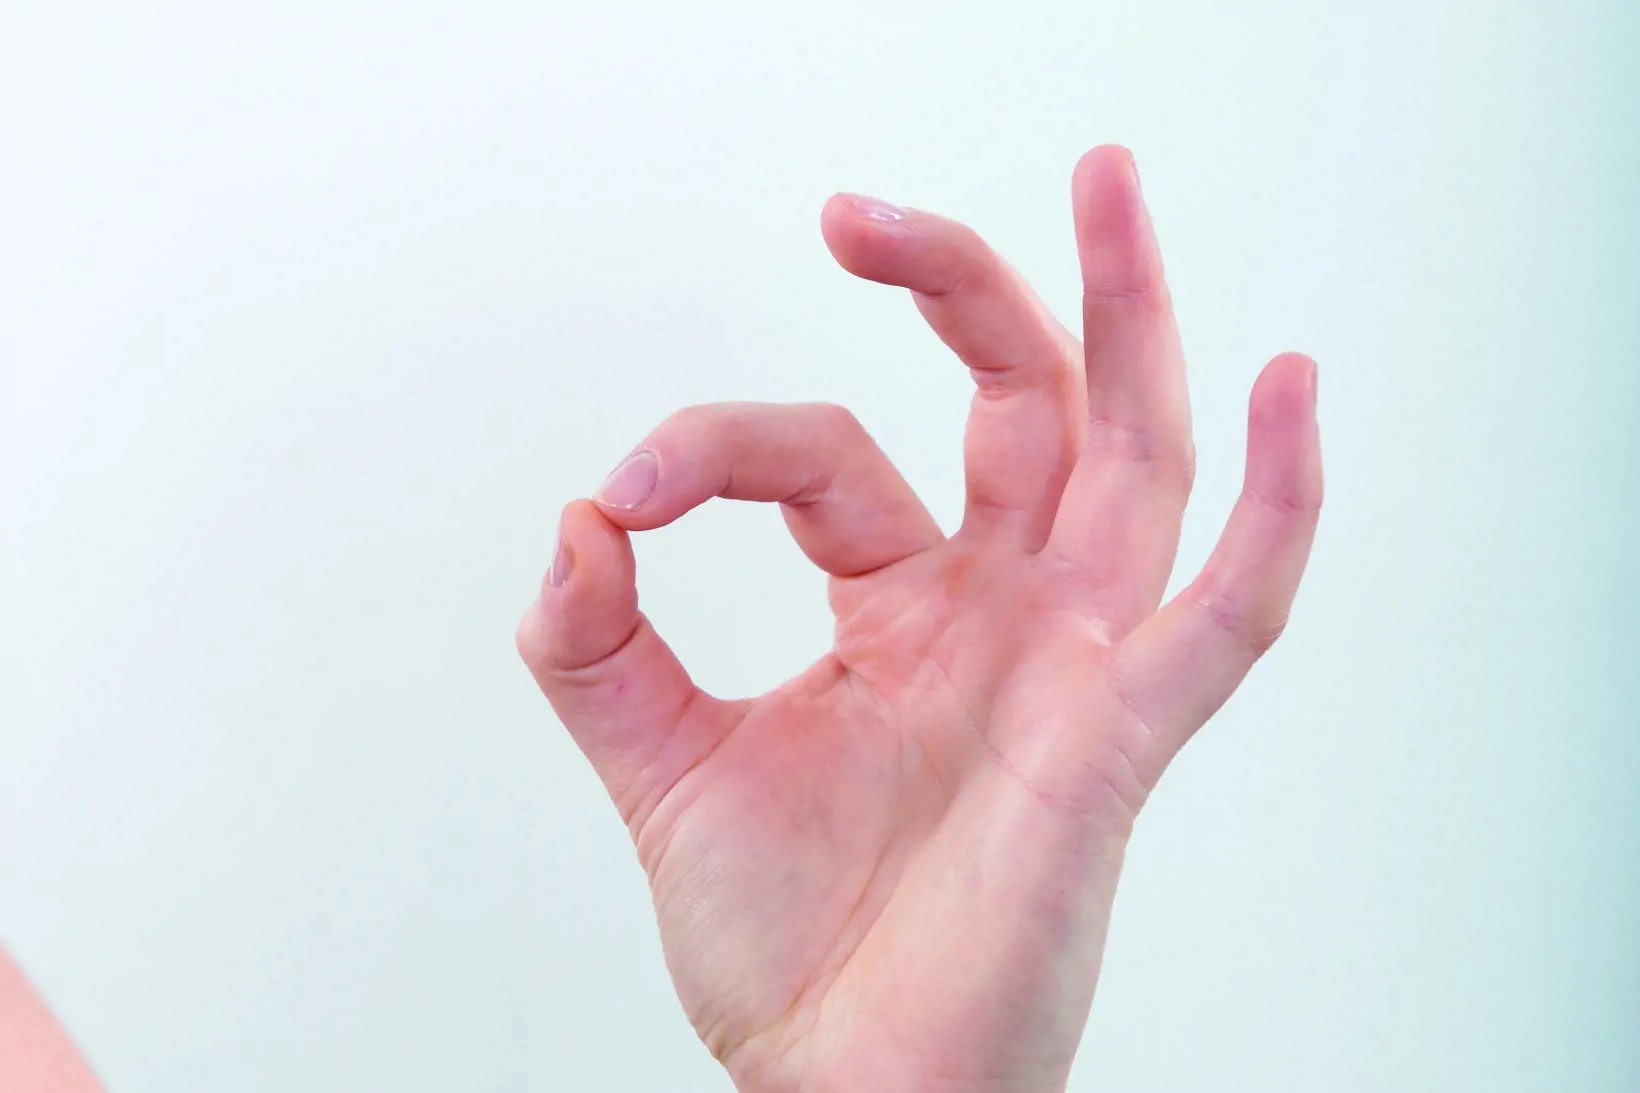 Bilde av en hånd hvor tommel og pekefinger er fingertupp mot fingertupp